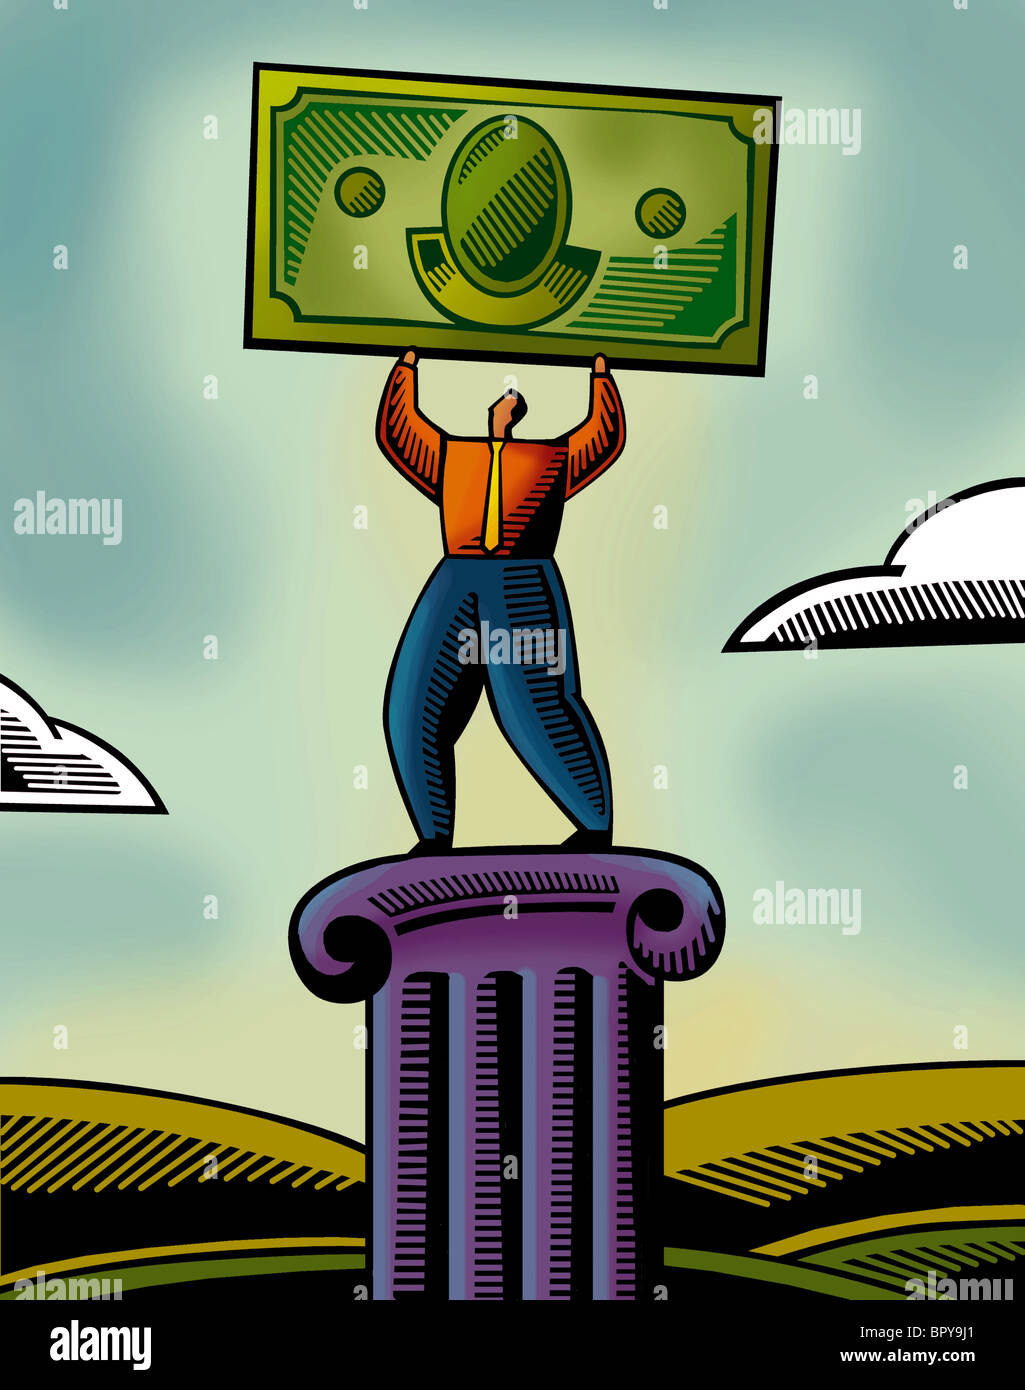 Une illustration d'un homme levant un billet de banque Banque D'Images